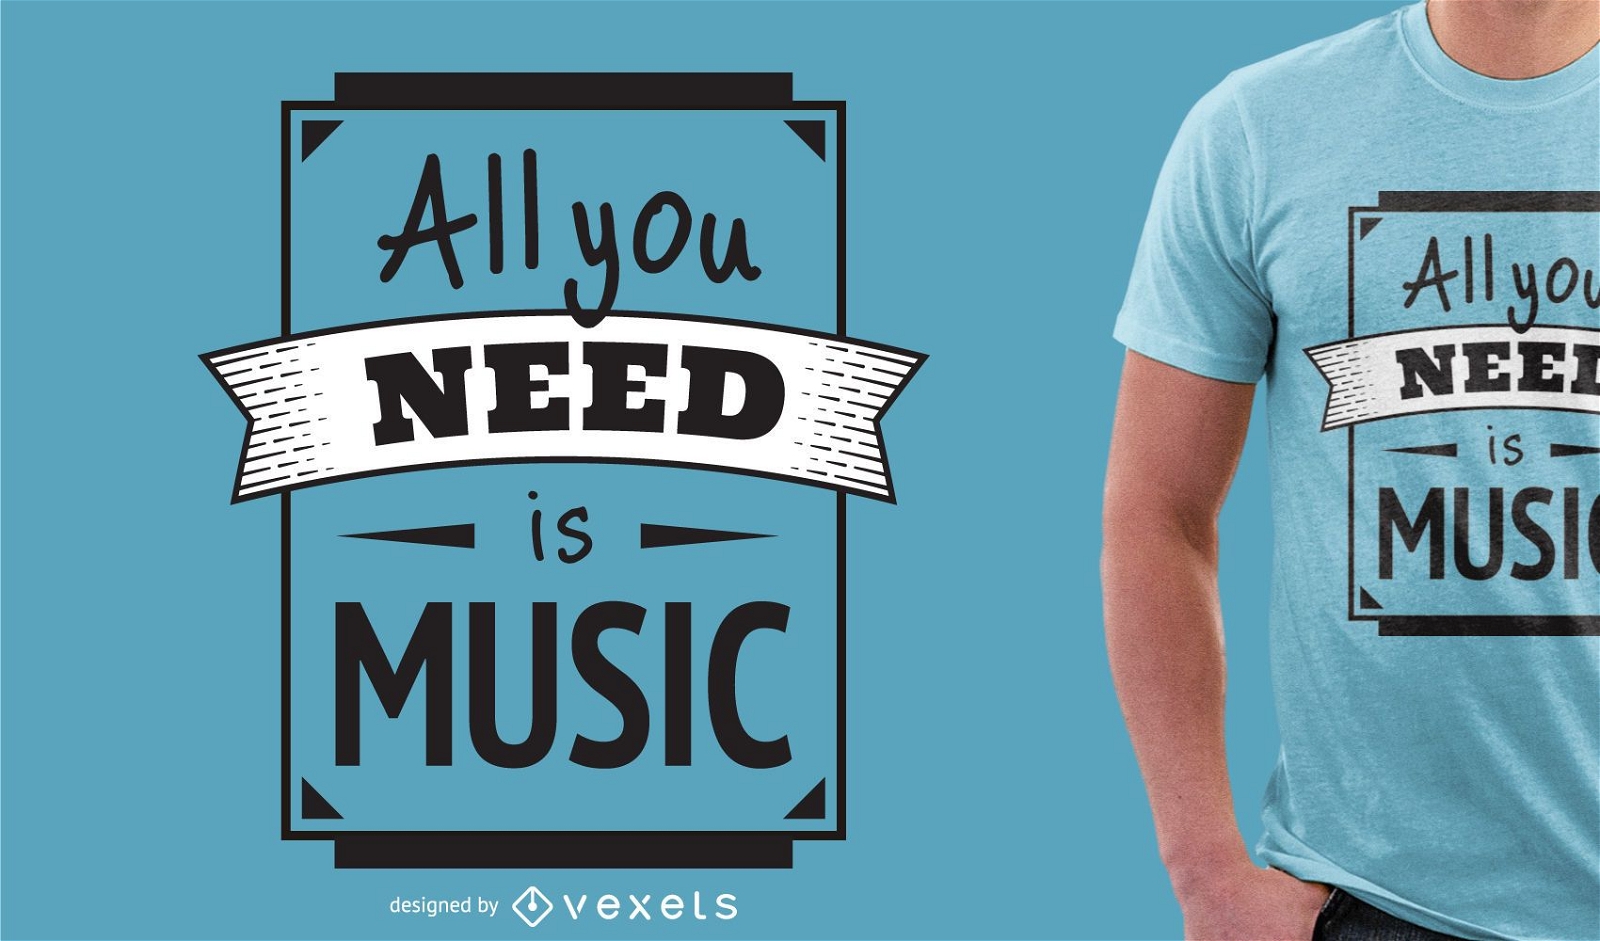 Todo lo que necesitas es un dise?o de camiseta musical.